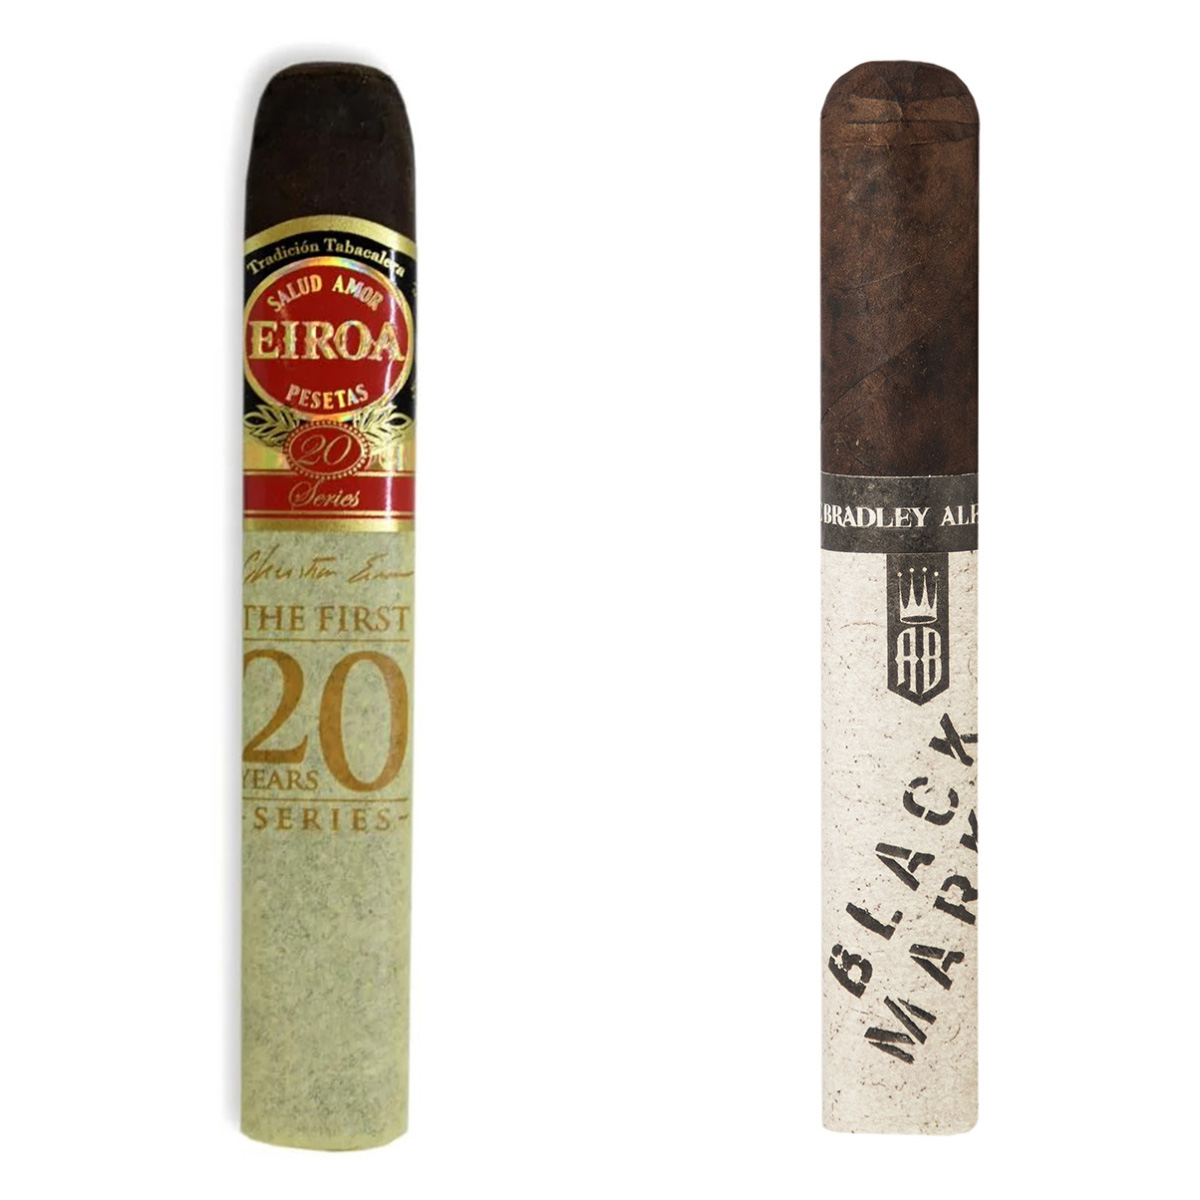 New World Cigar Sampler Pack - Honduras (Medium)